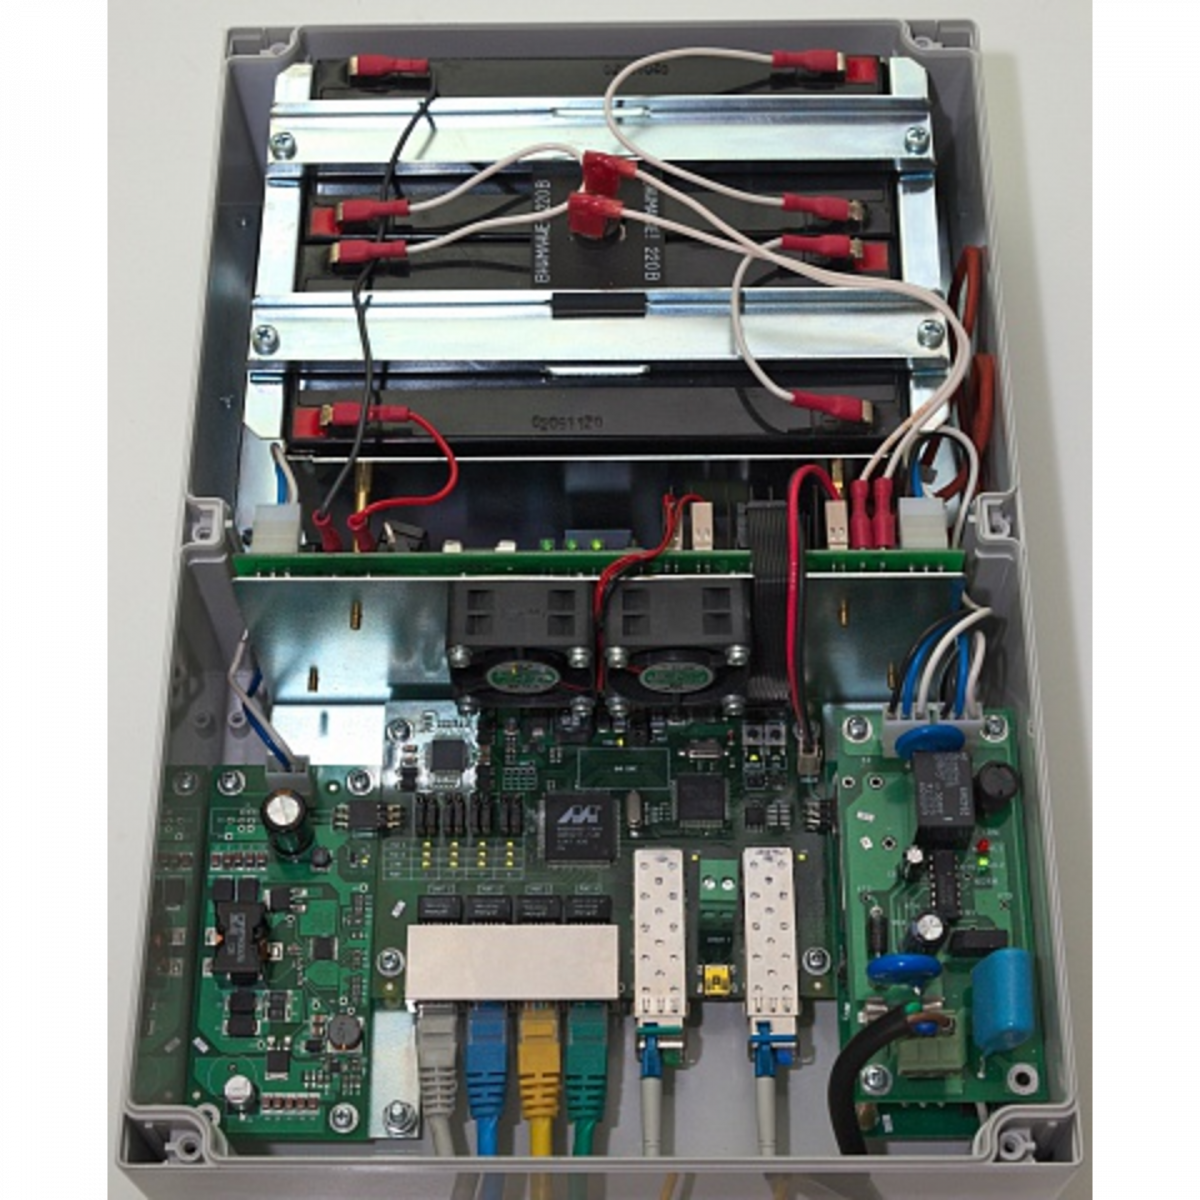 Уличный управляемый PoE коммутатор TFORTIS PSW-2G4F-UPS 4FE PoE +2 GB SFP порта, питание 220В, IP66 c системой бесперебойного питания, 4 АКБ в кмпл